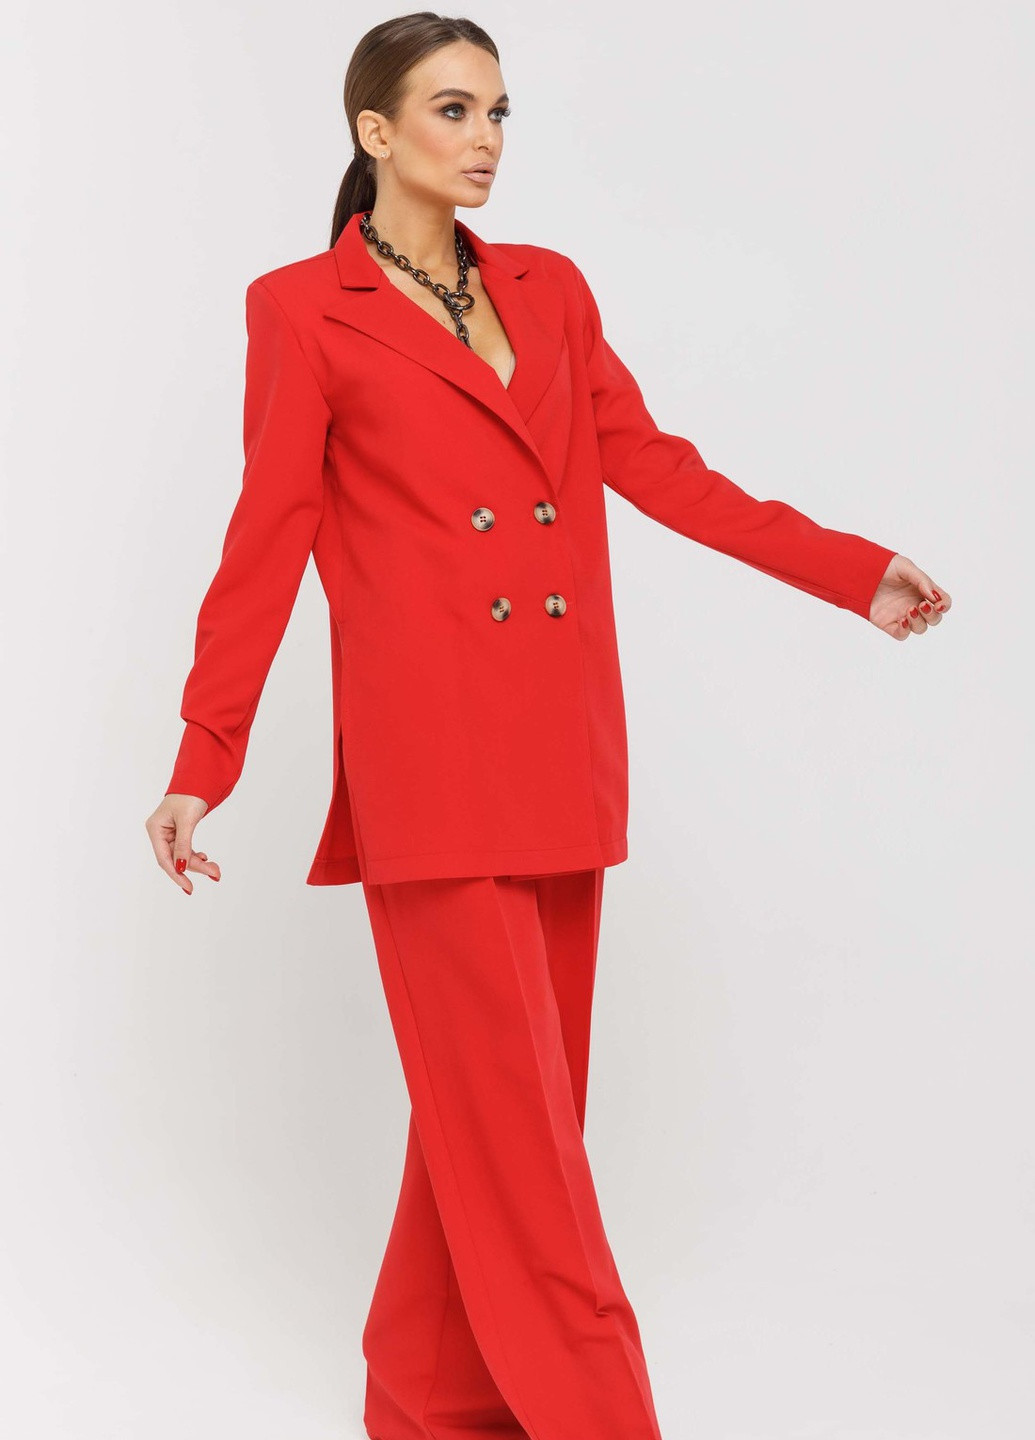 Красный женский пиджак скарлетт пи 0320 красный Ри Мари однотонный - демисезонный